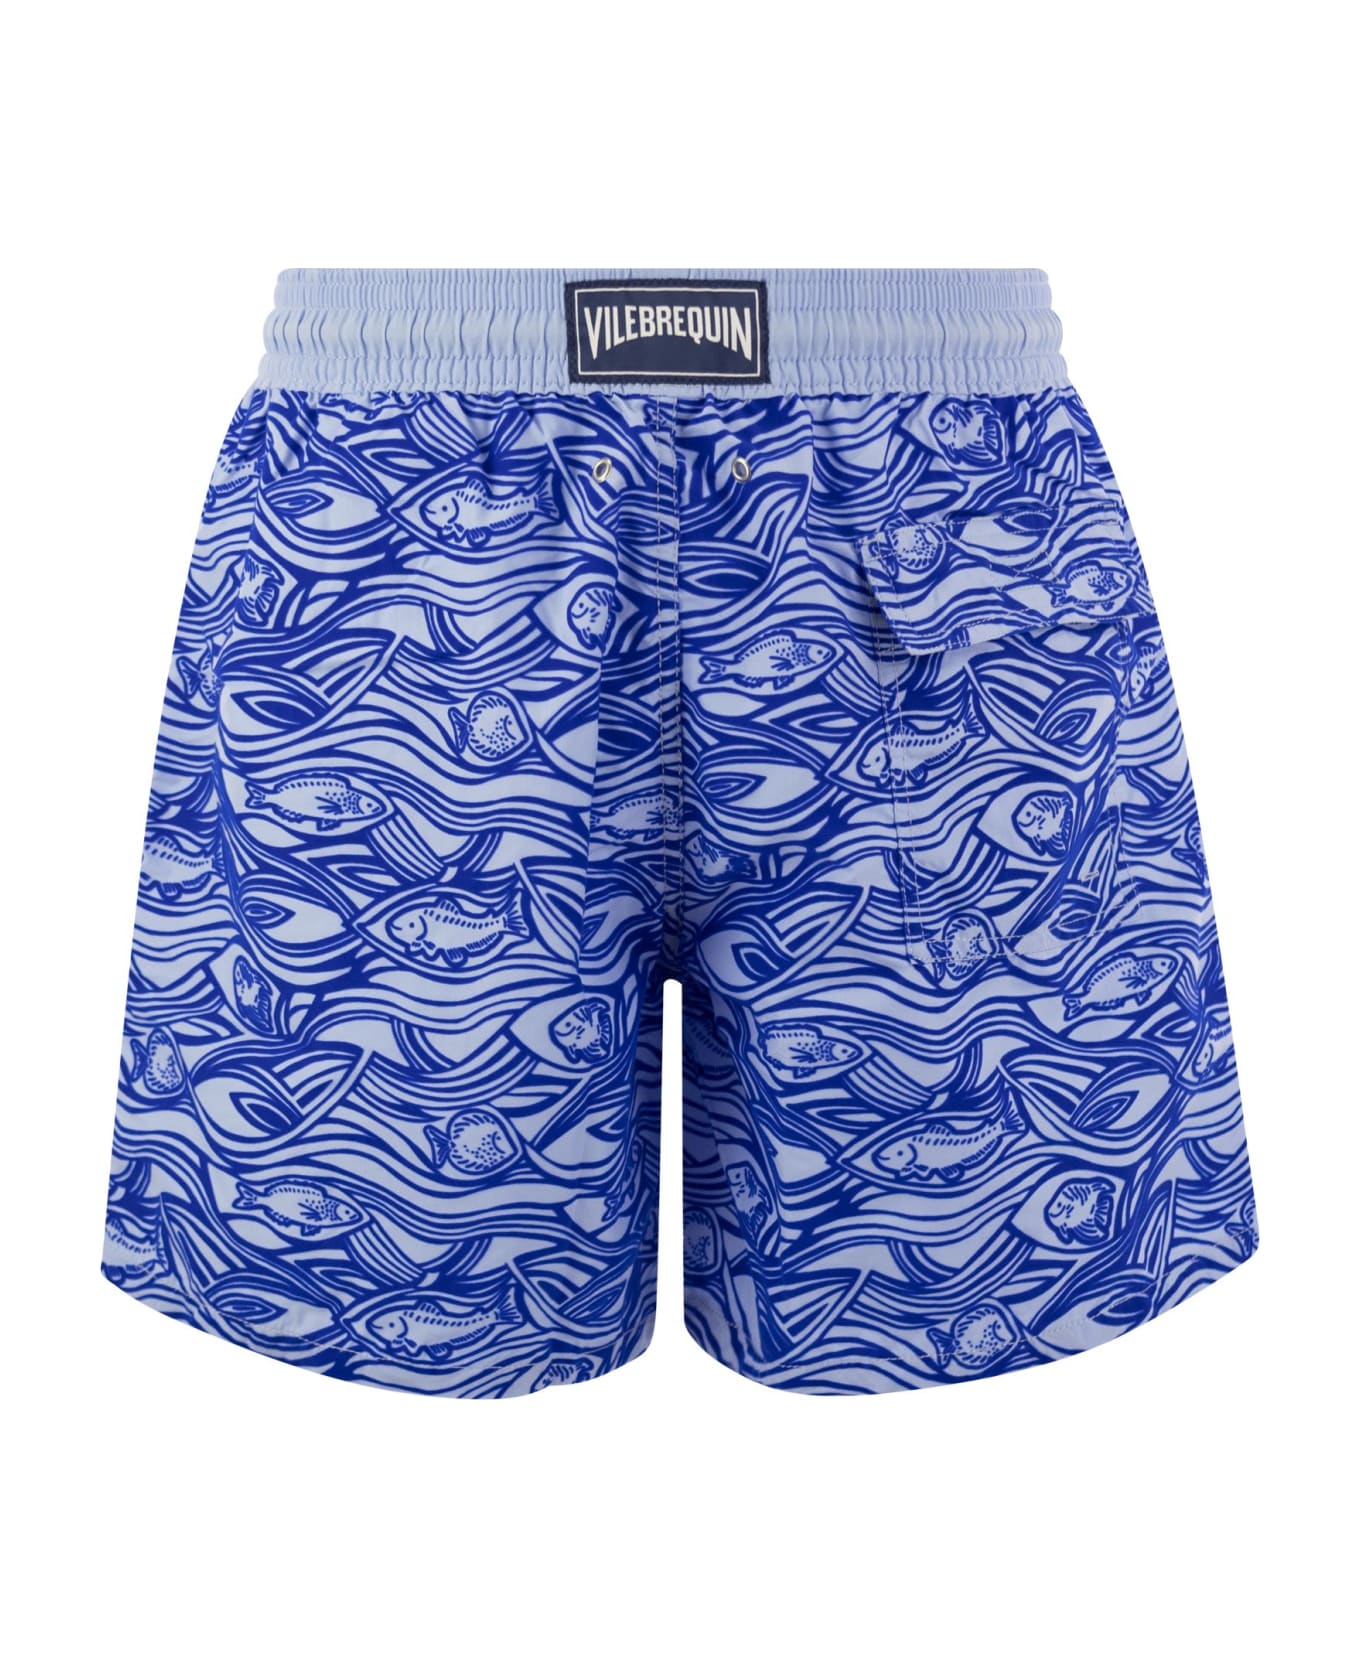 Vilebrequin Flocked Aquarium Swimming Shorts - Blue 水着